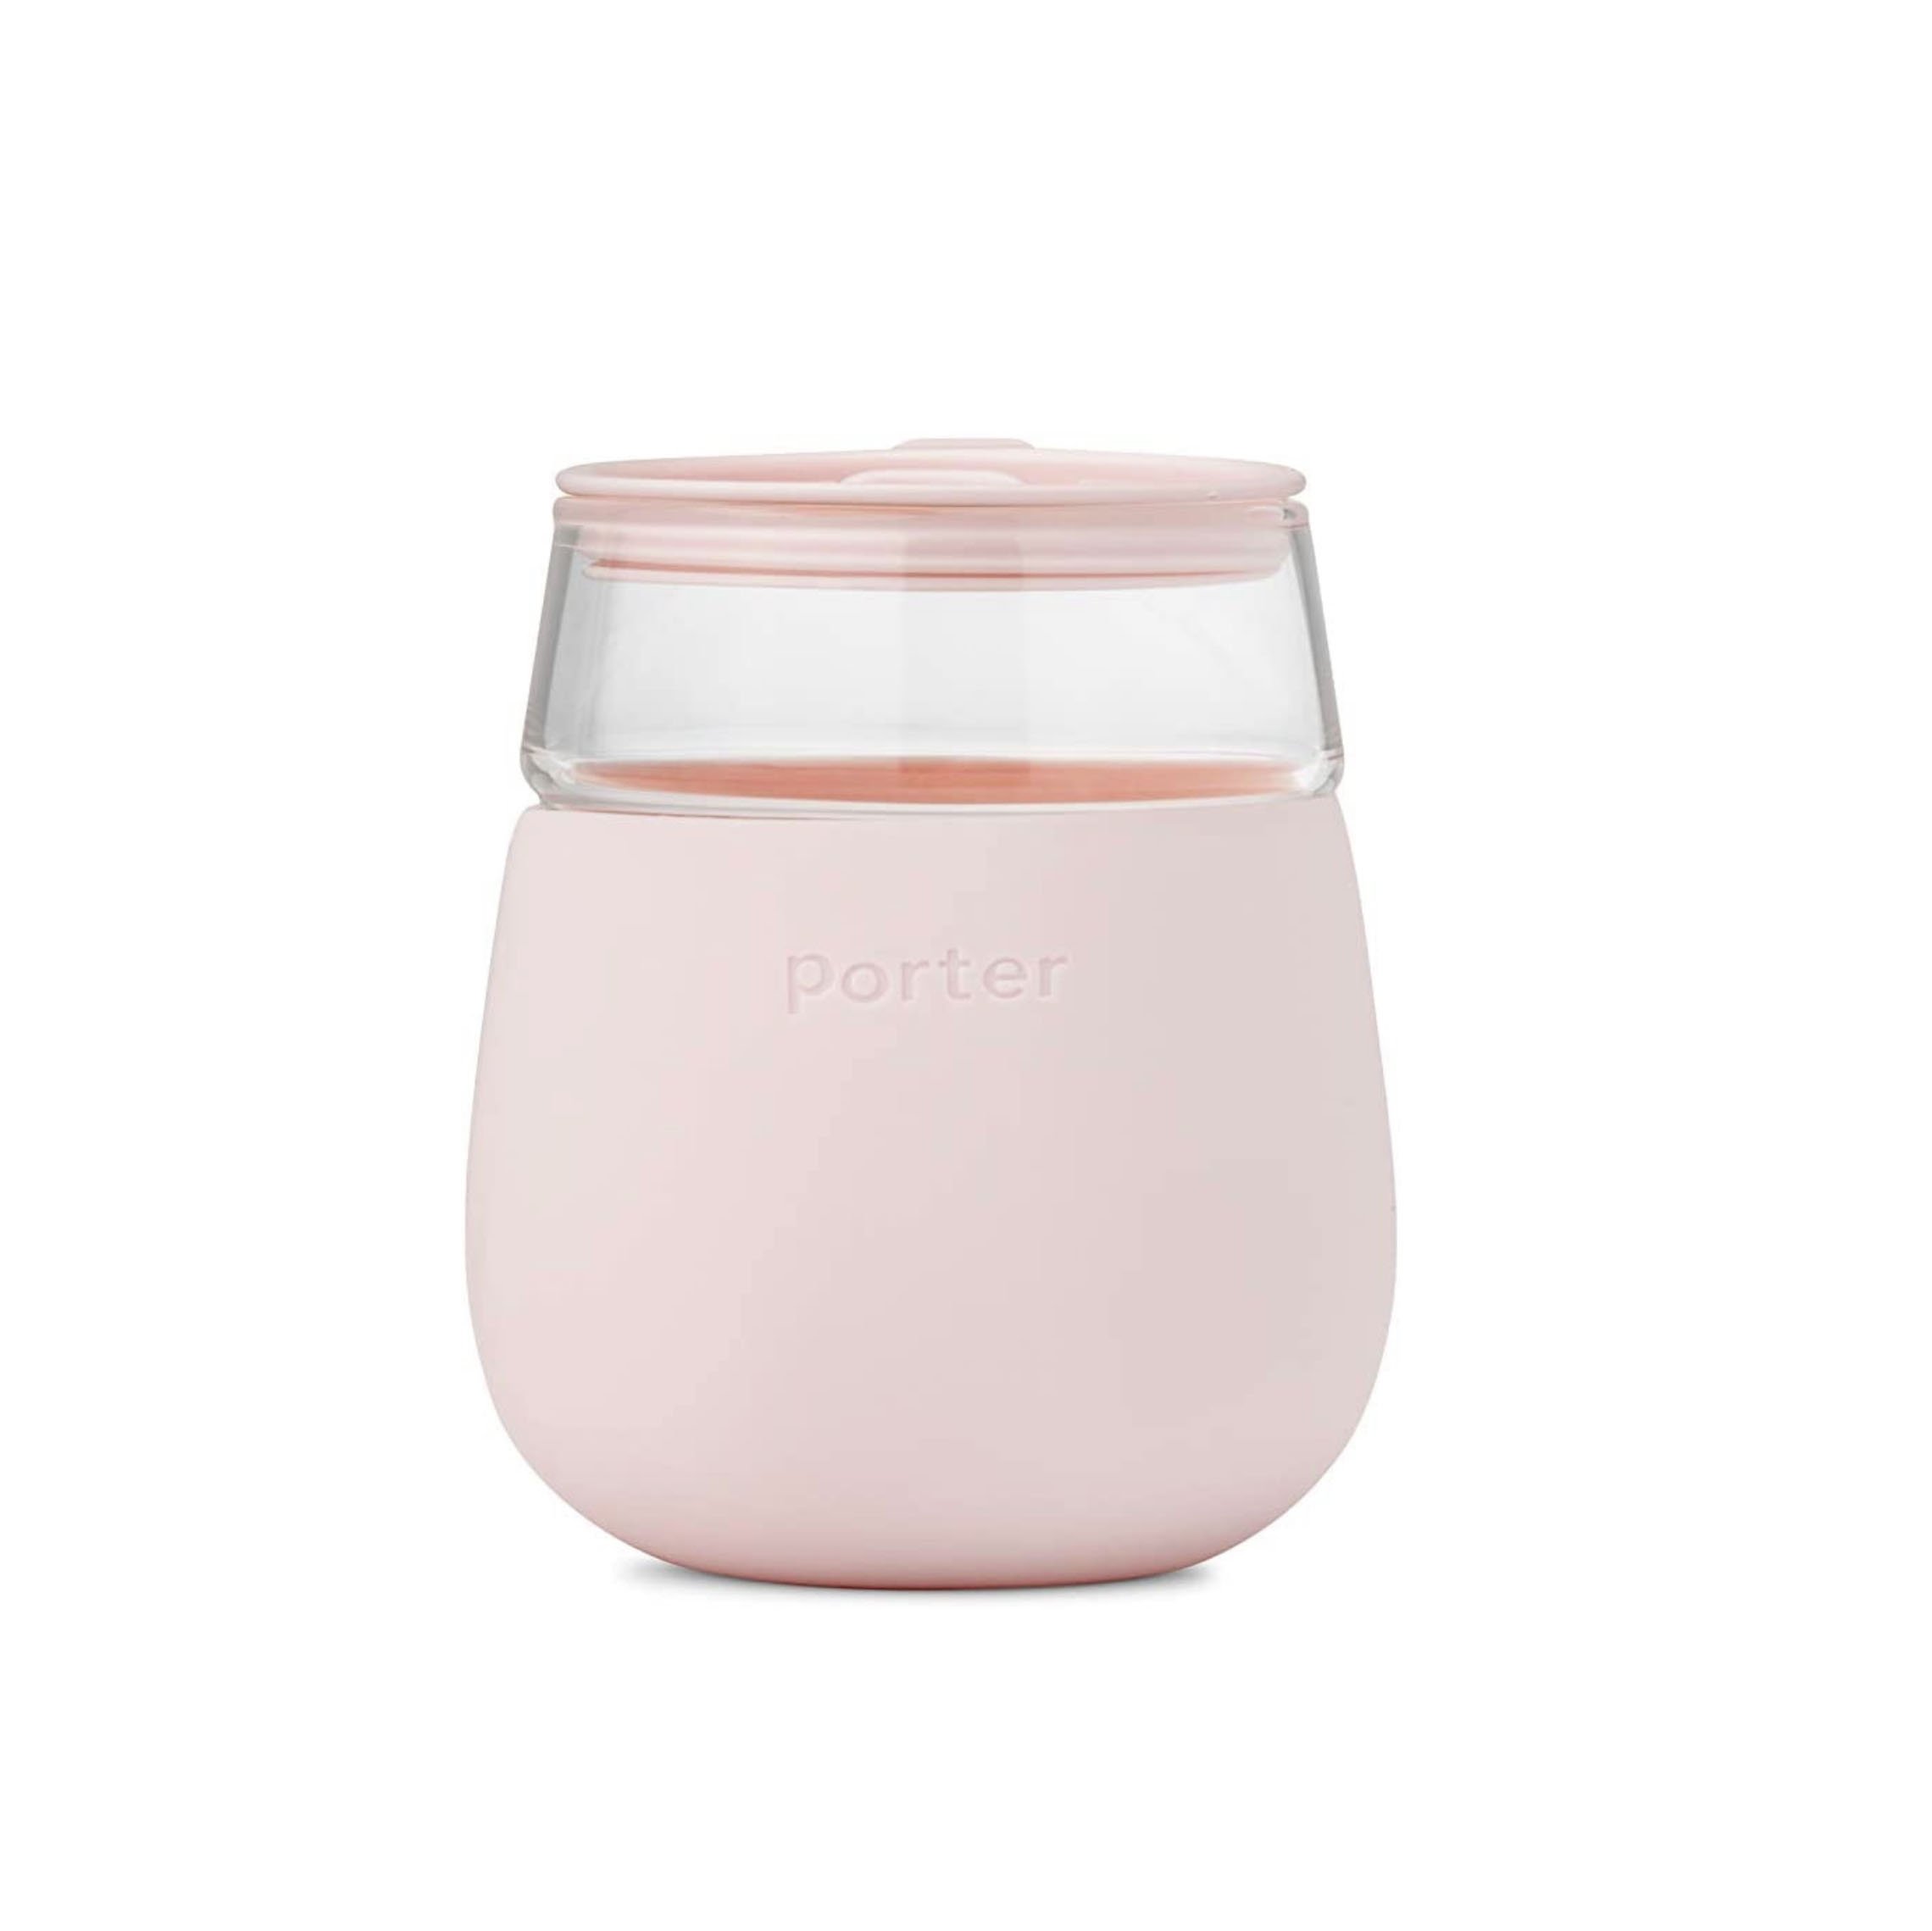 Porter wine glass